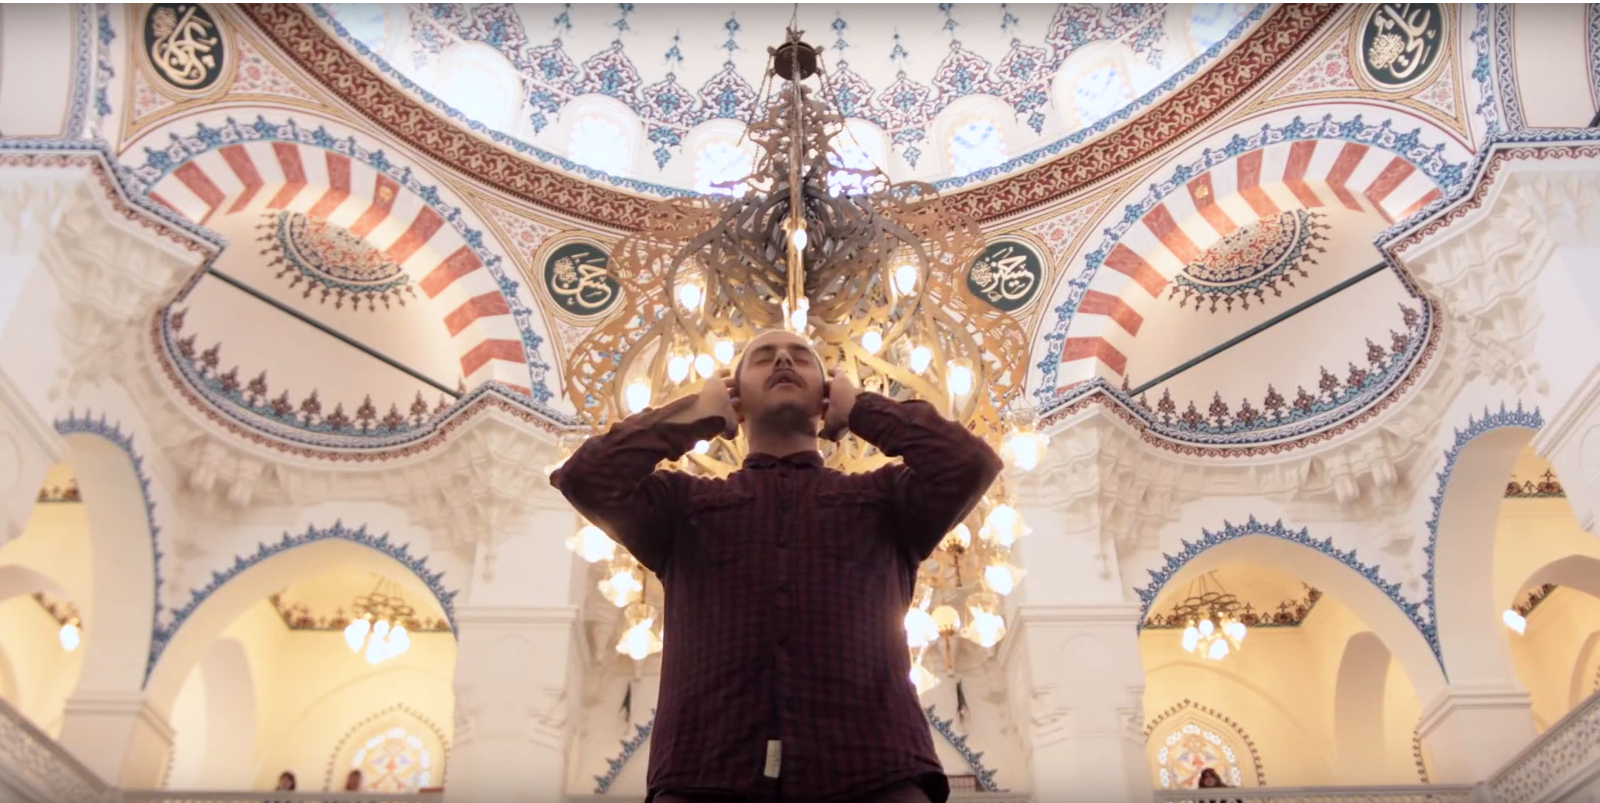 Ein Imam steht unter der Kuppel einer Moschee und ruft aus